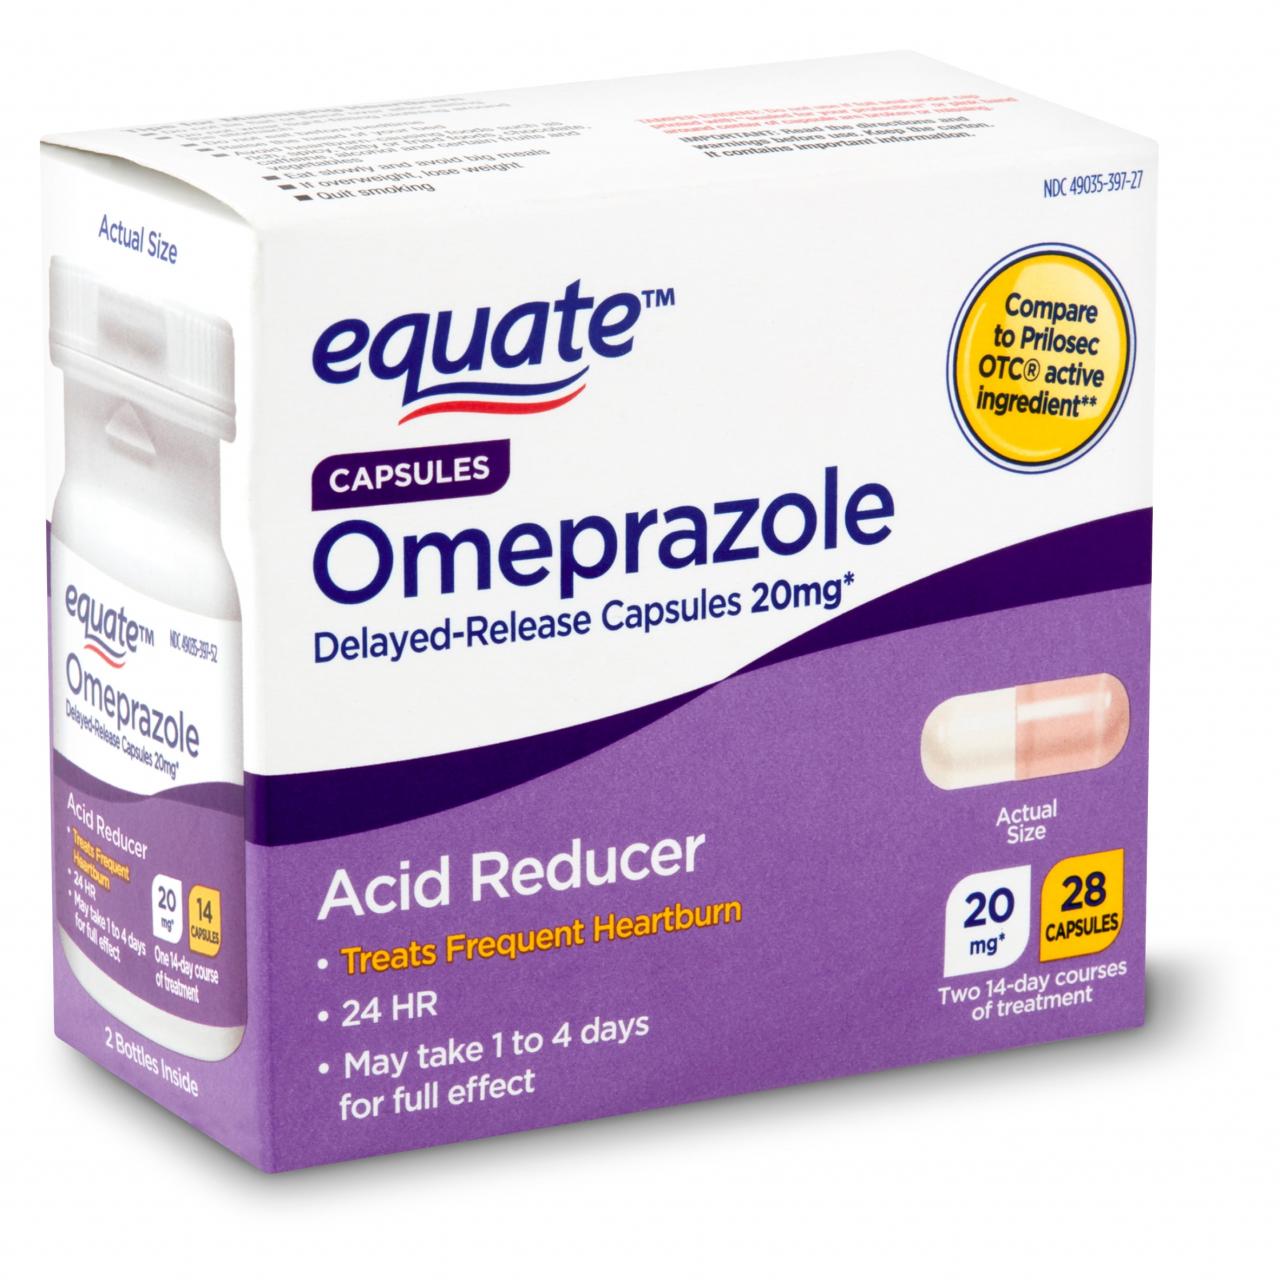 Omeprazole - Thuốc giảm axit dạ dày có thể gây hại cho sức khỏe?